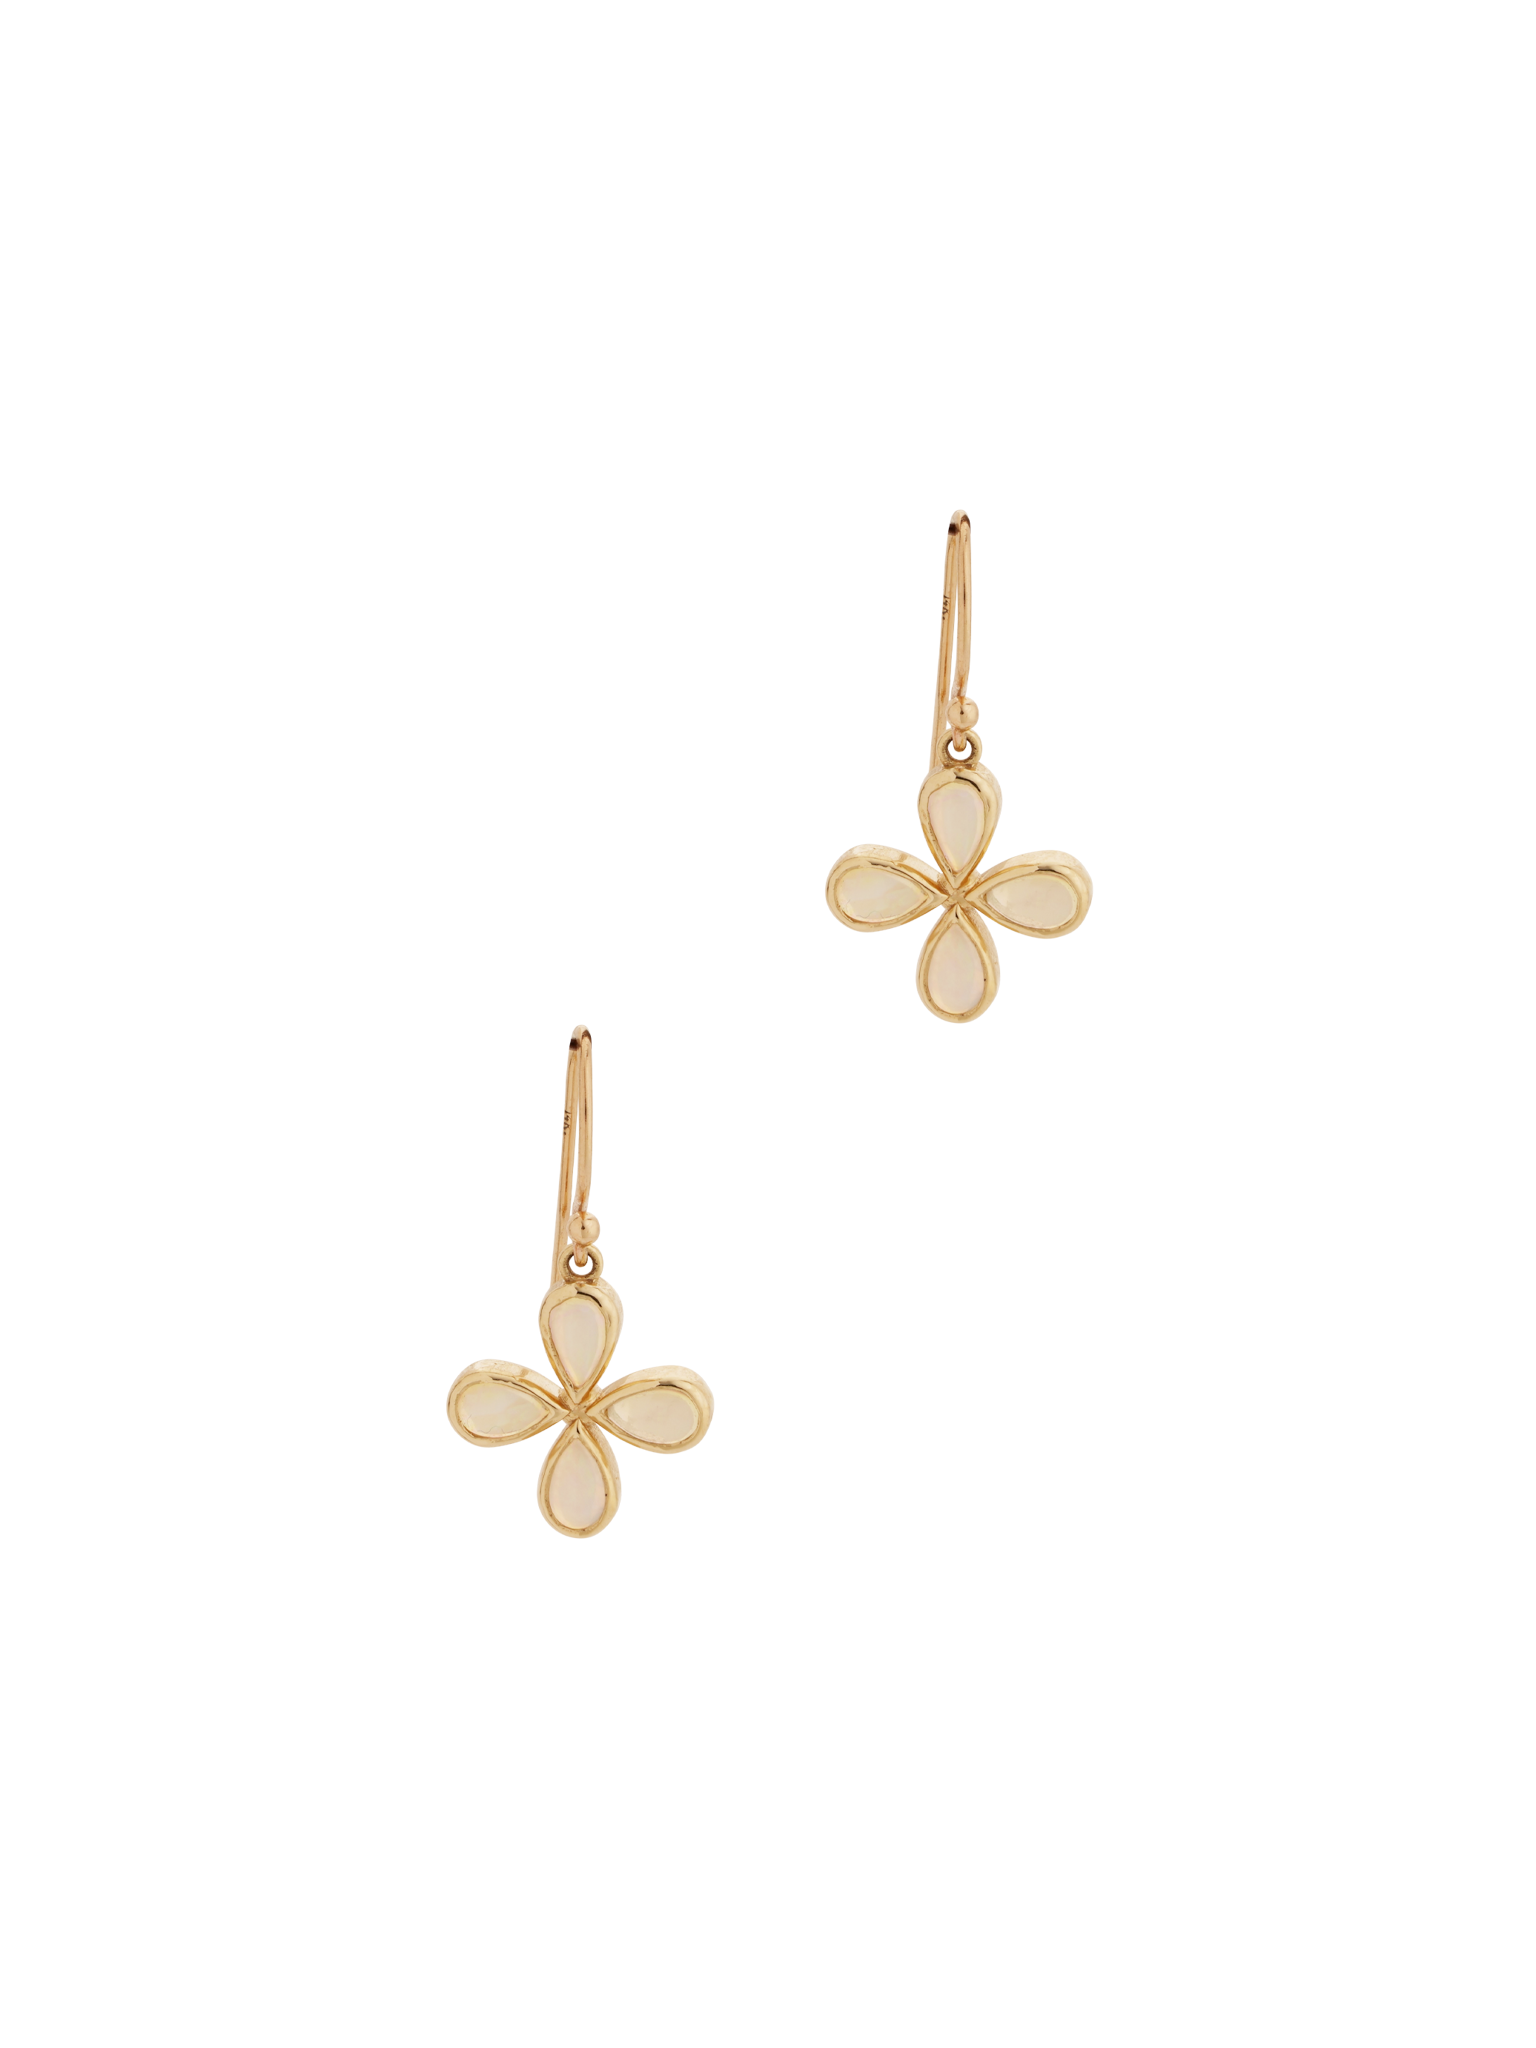 Opal flower earrings